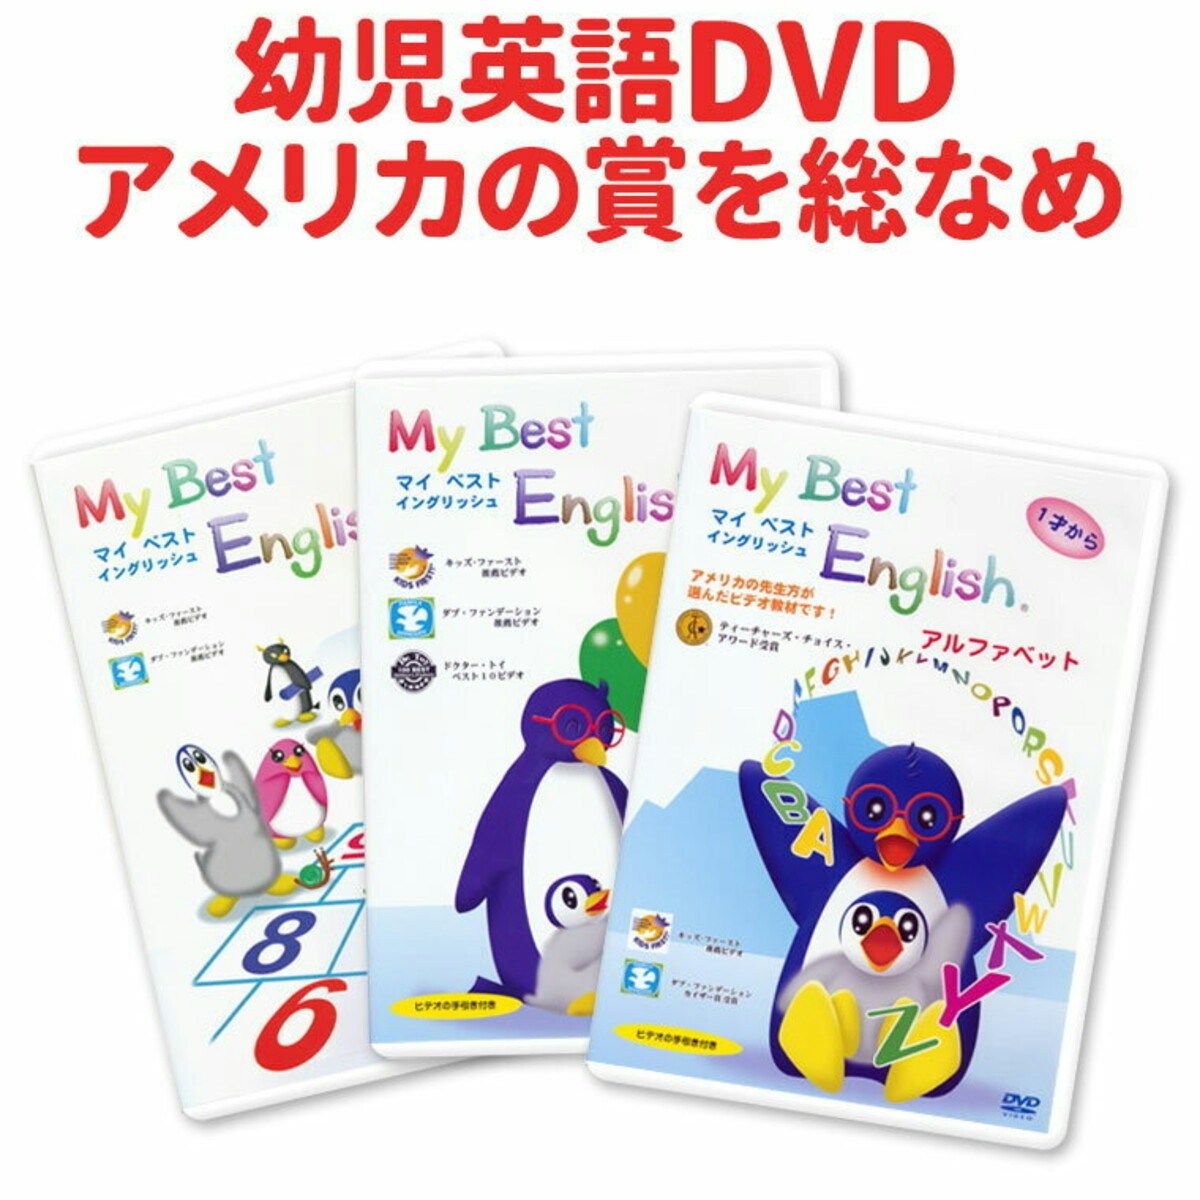  My Best English DVD 3巻セット